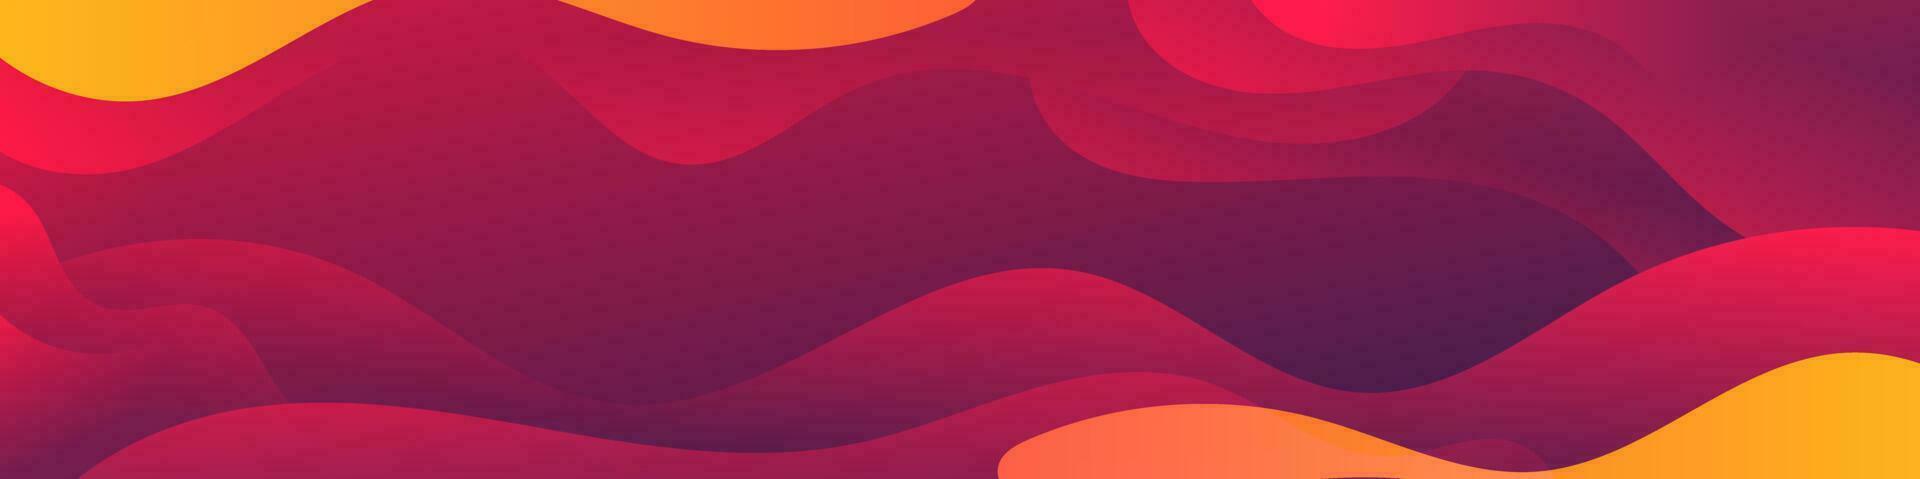 abstrakt lutning röd orange flytande Vinka bakgrund vektor